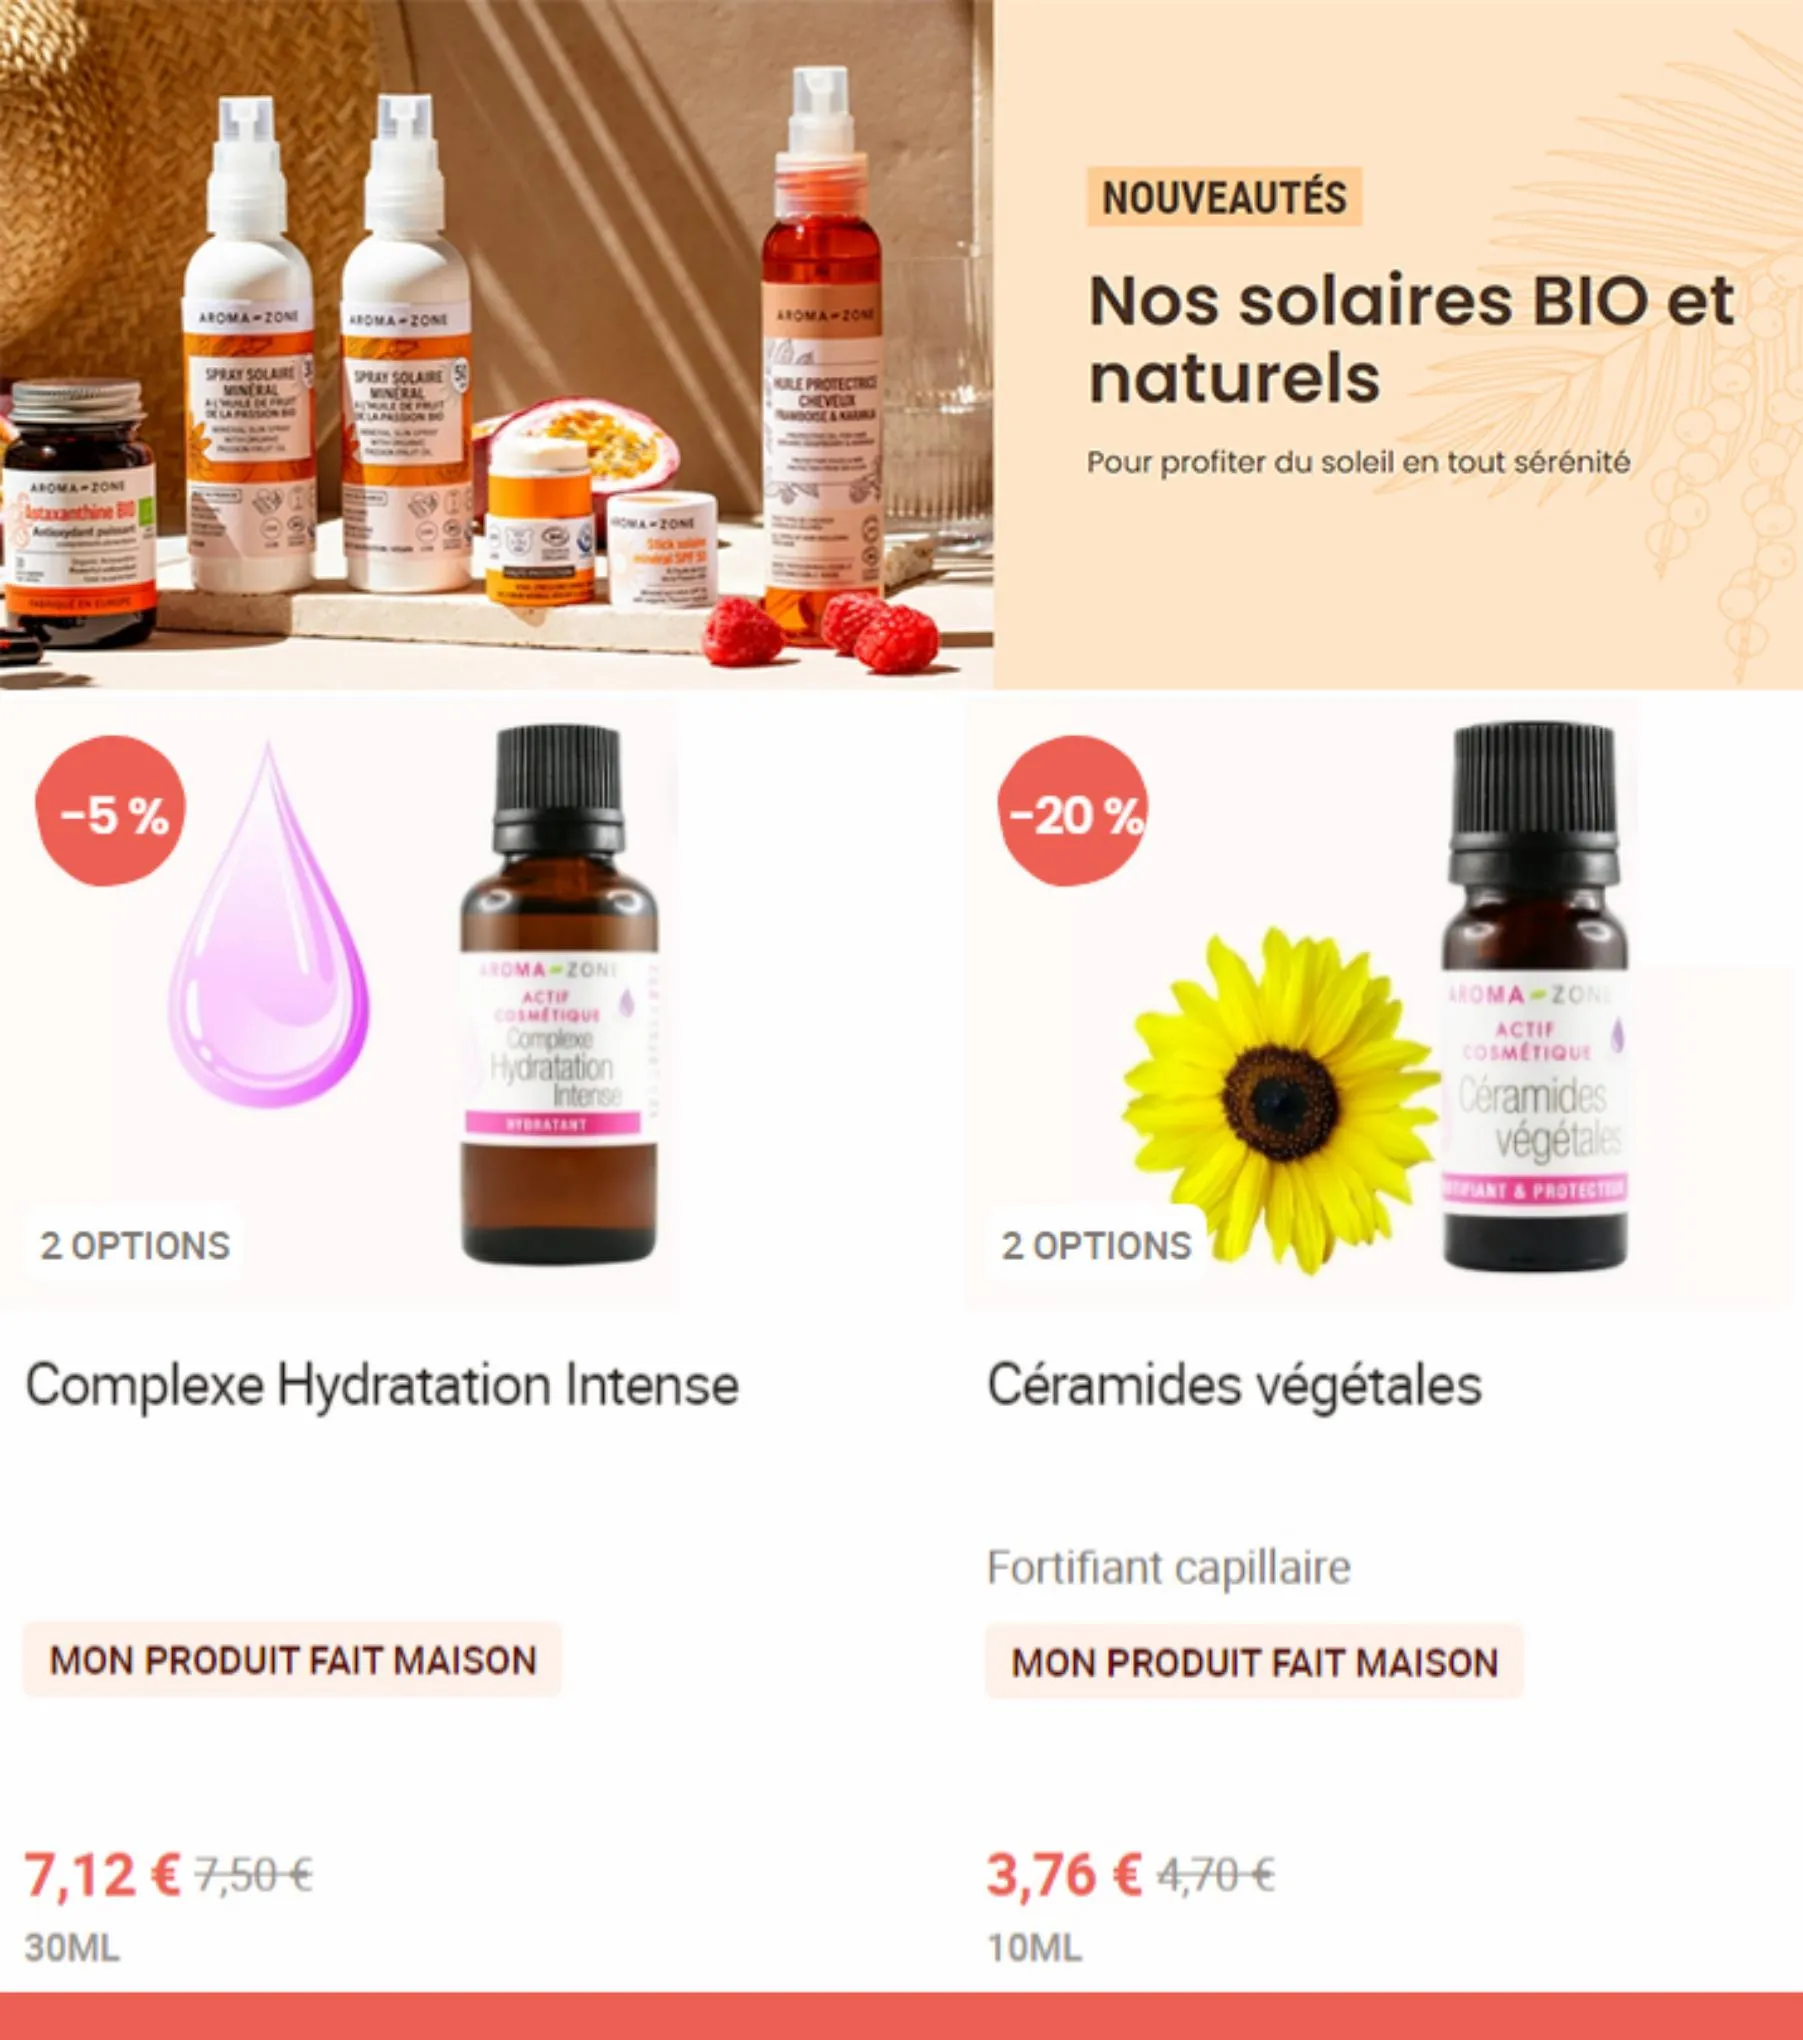 Catalogue Nouveautés-Nos solaires BIO et naturels, page 00005